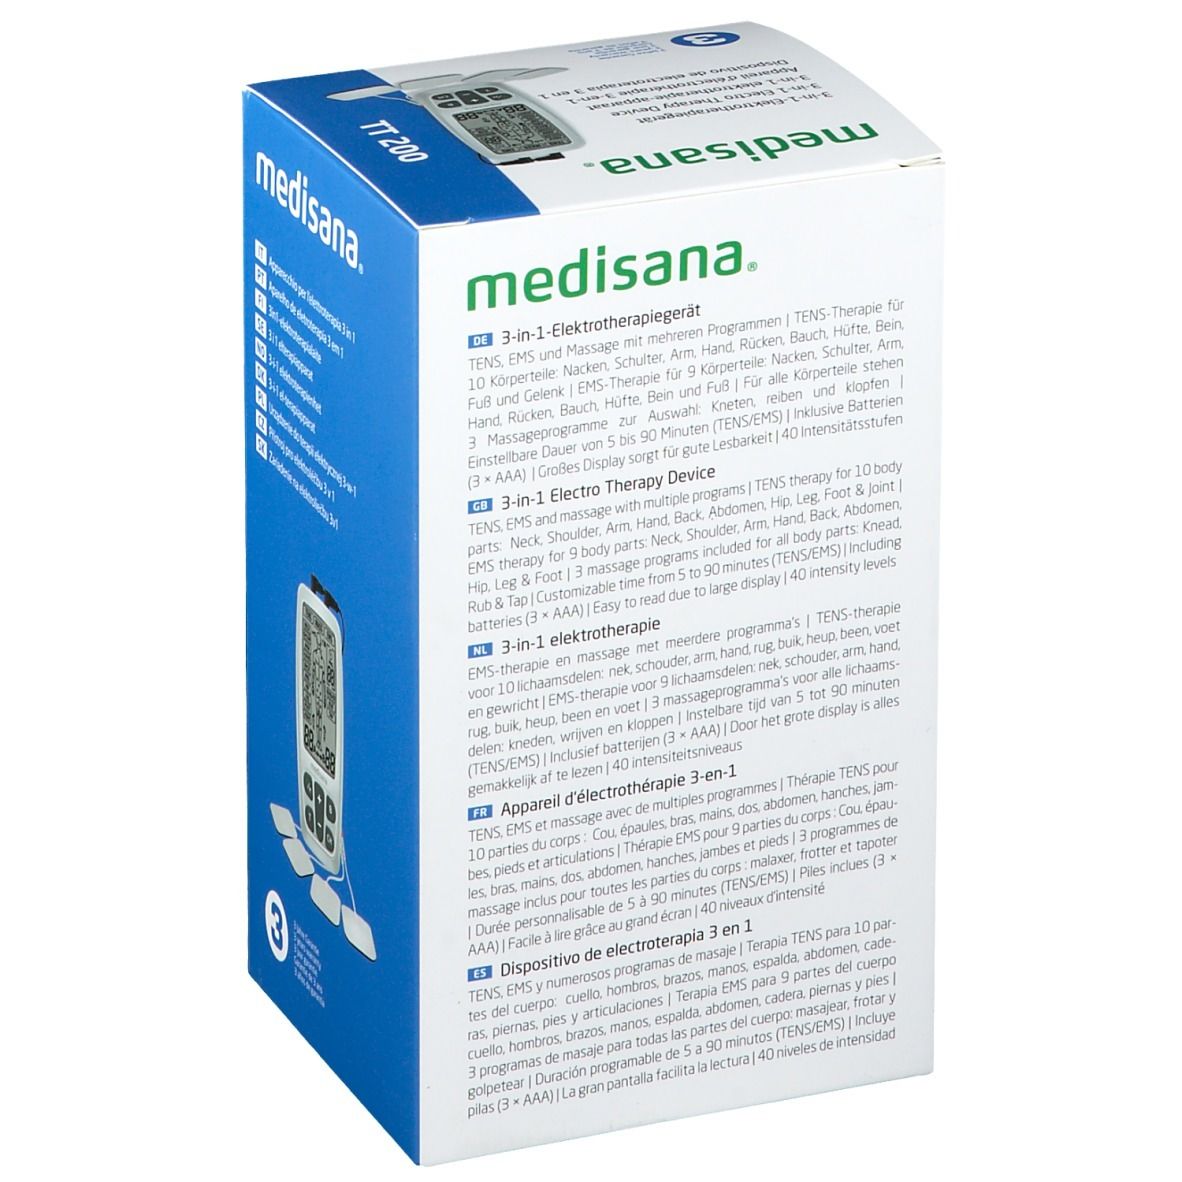 mediasana® 3-in-1 Elektrptherapiegerät